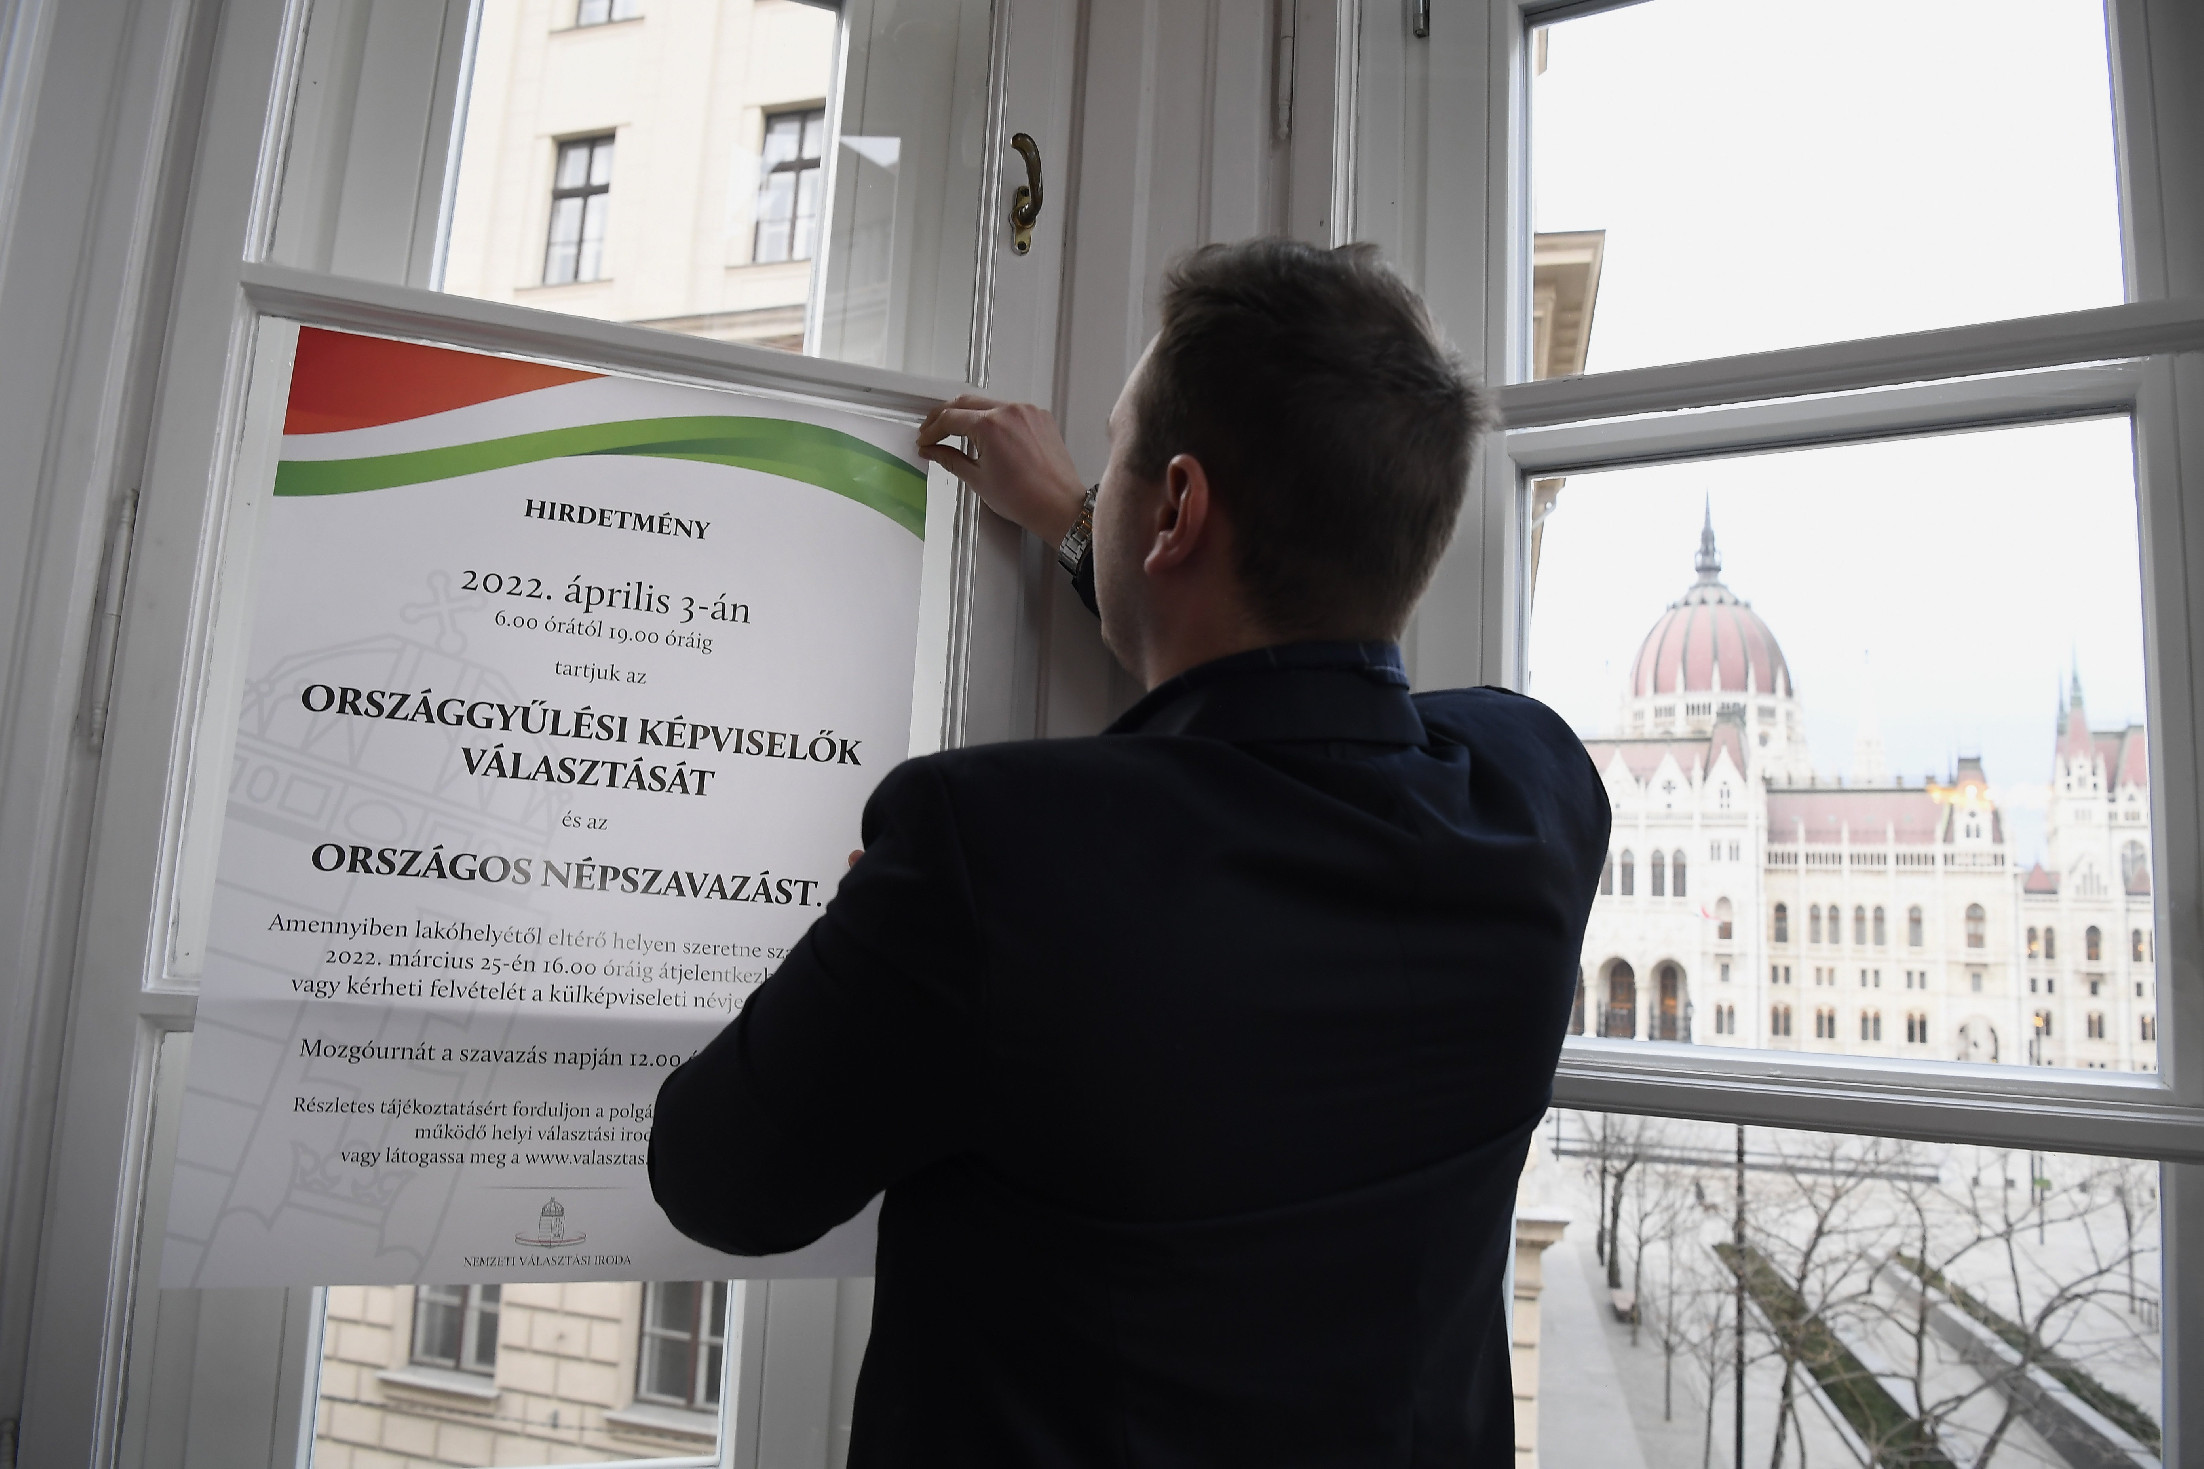 Teljeskörű megfigyelést javasol az EBESZ az áprilisi választásokra